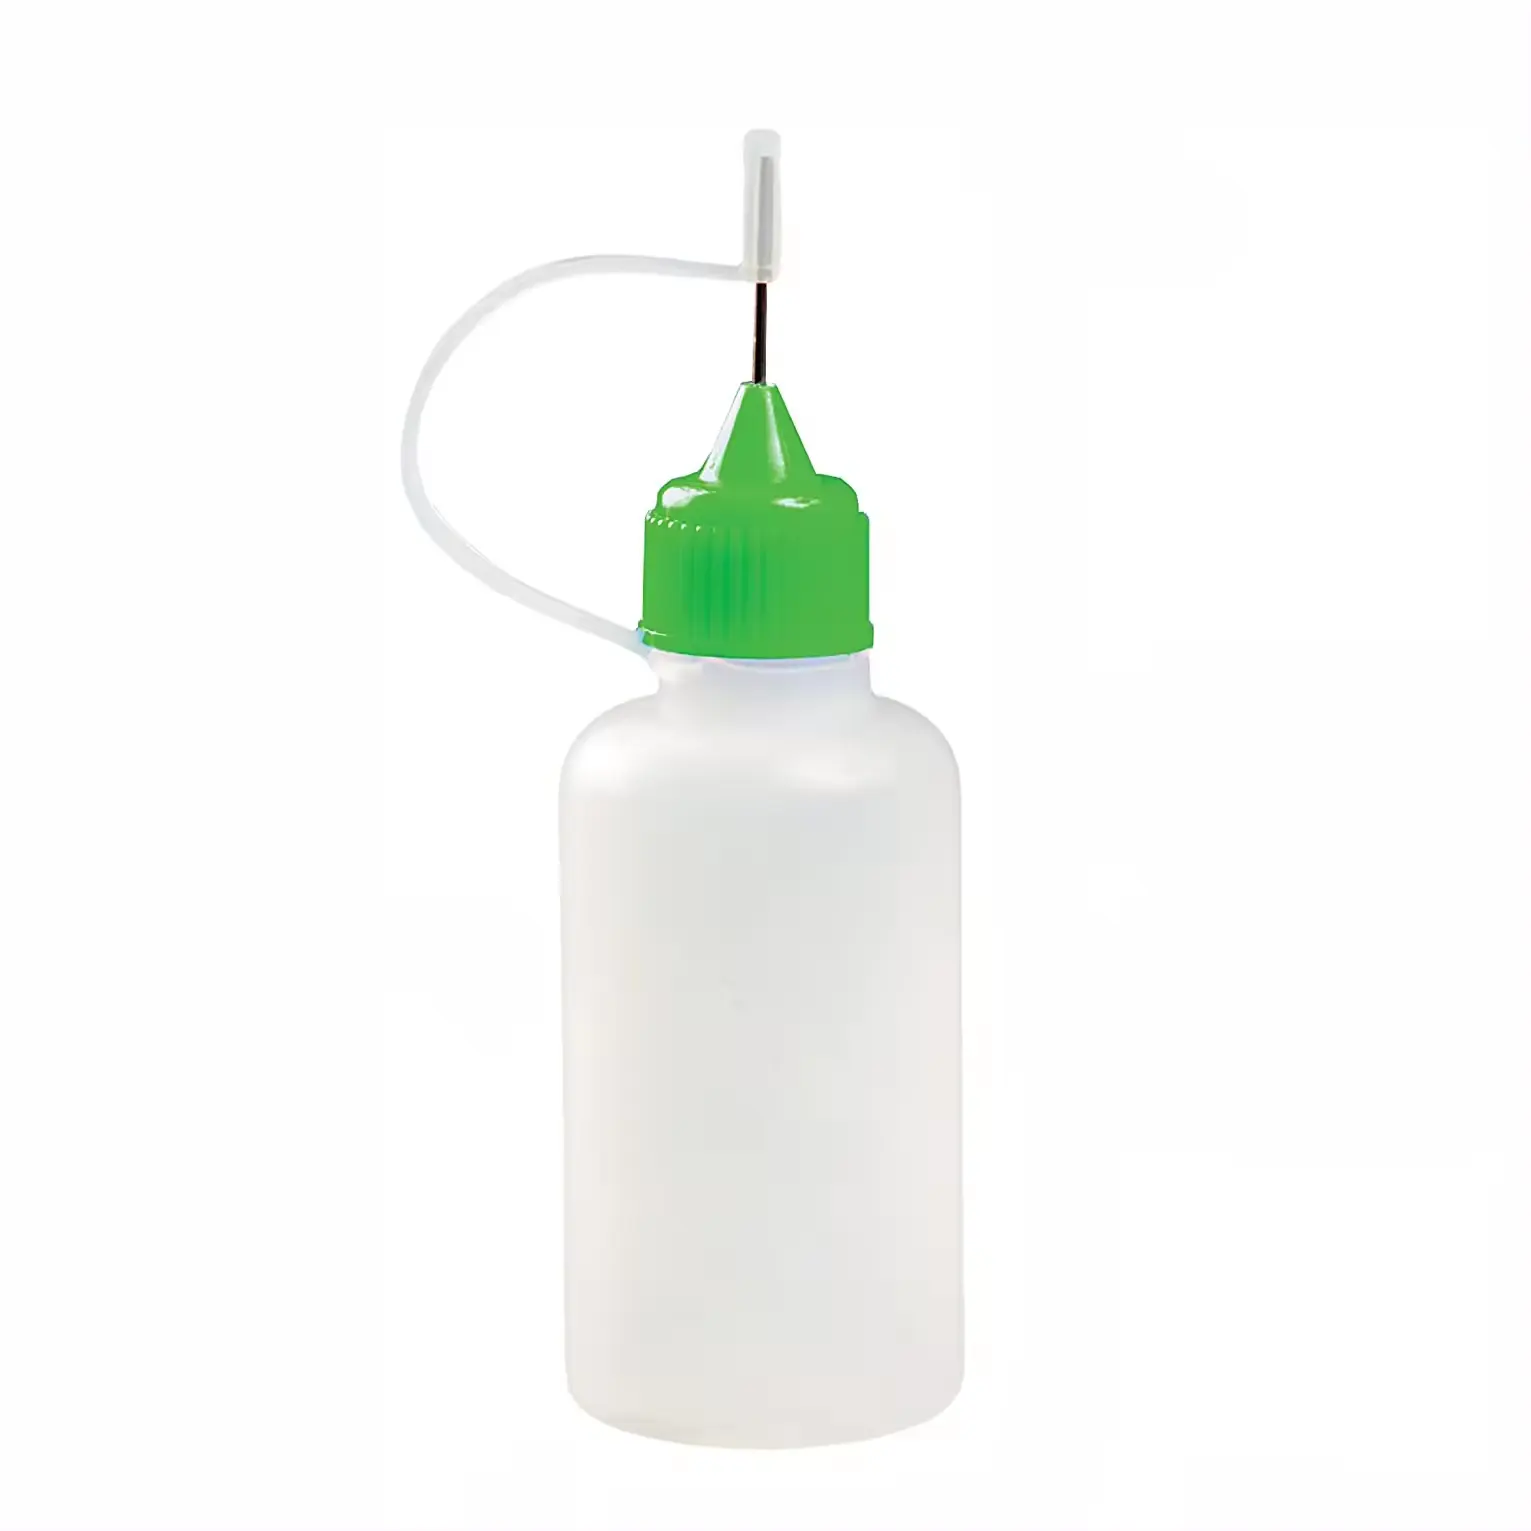 Cuentagotas de plástico, aplicador de punta de aguja de Metal de precisión, botella de pegamento exprimible con tapa giratoria